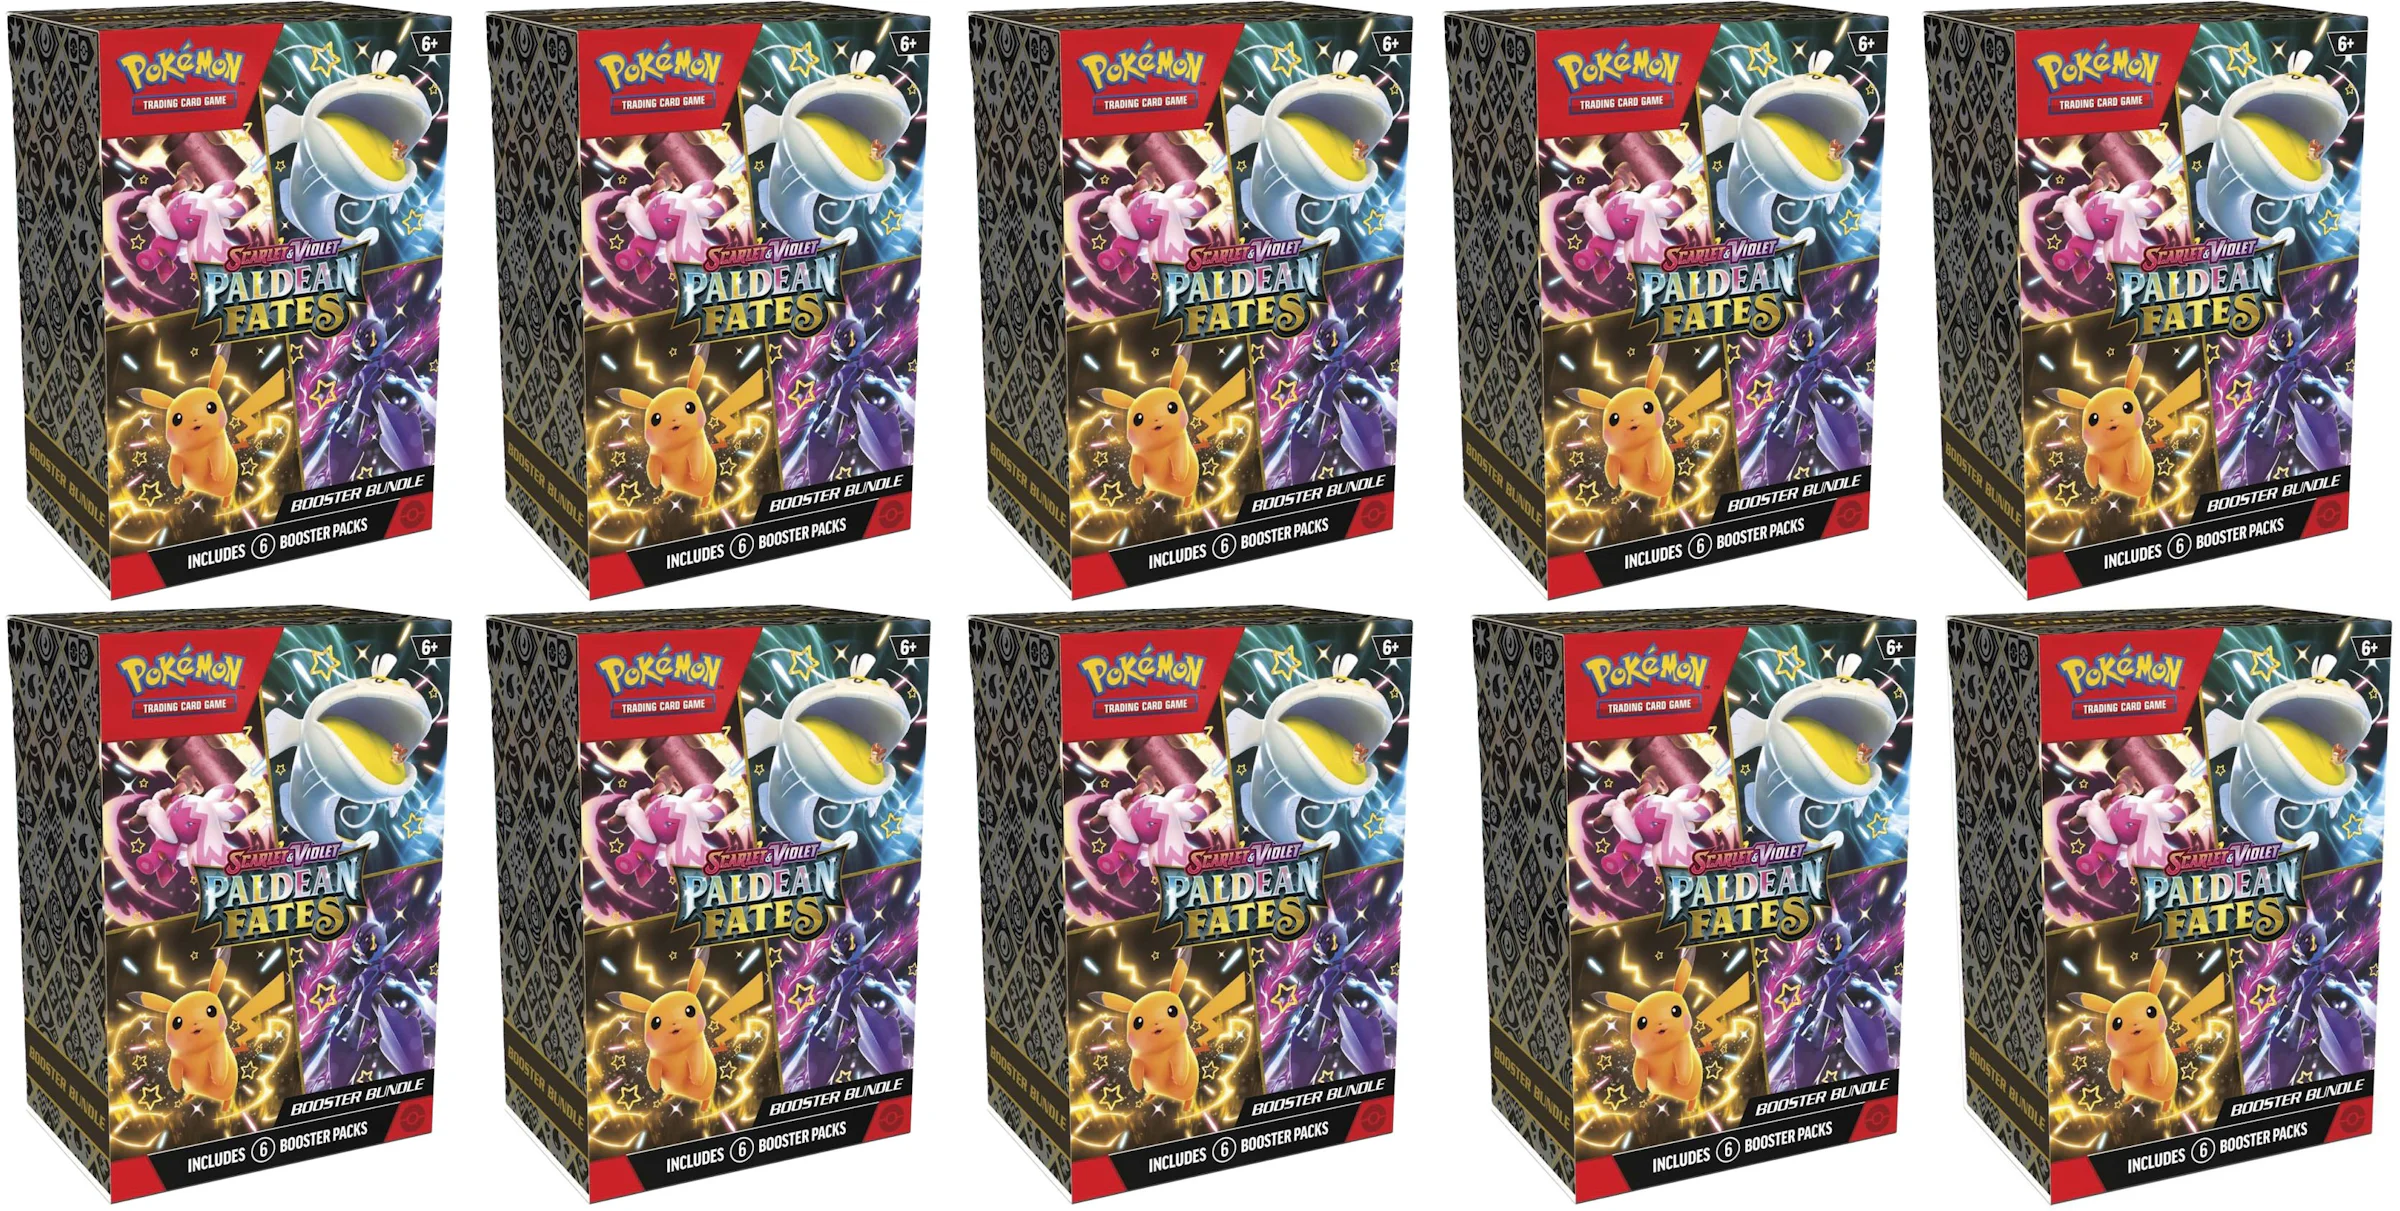 Pokémon Trading Card Games Scarlet & Violet 3.5 151 Booster Bundle 